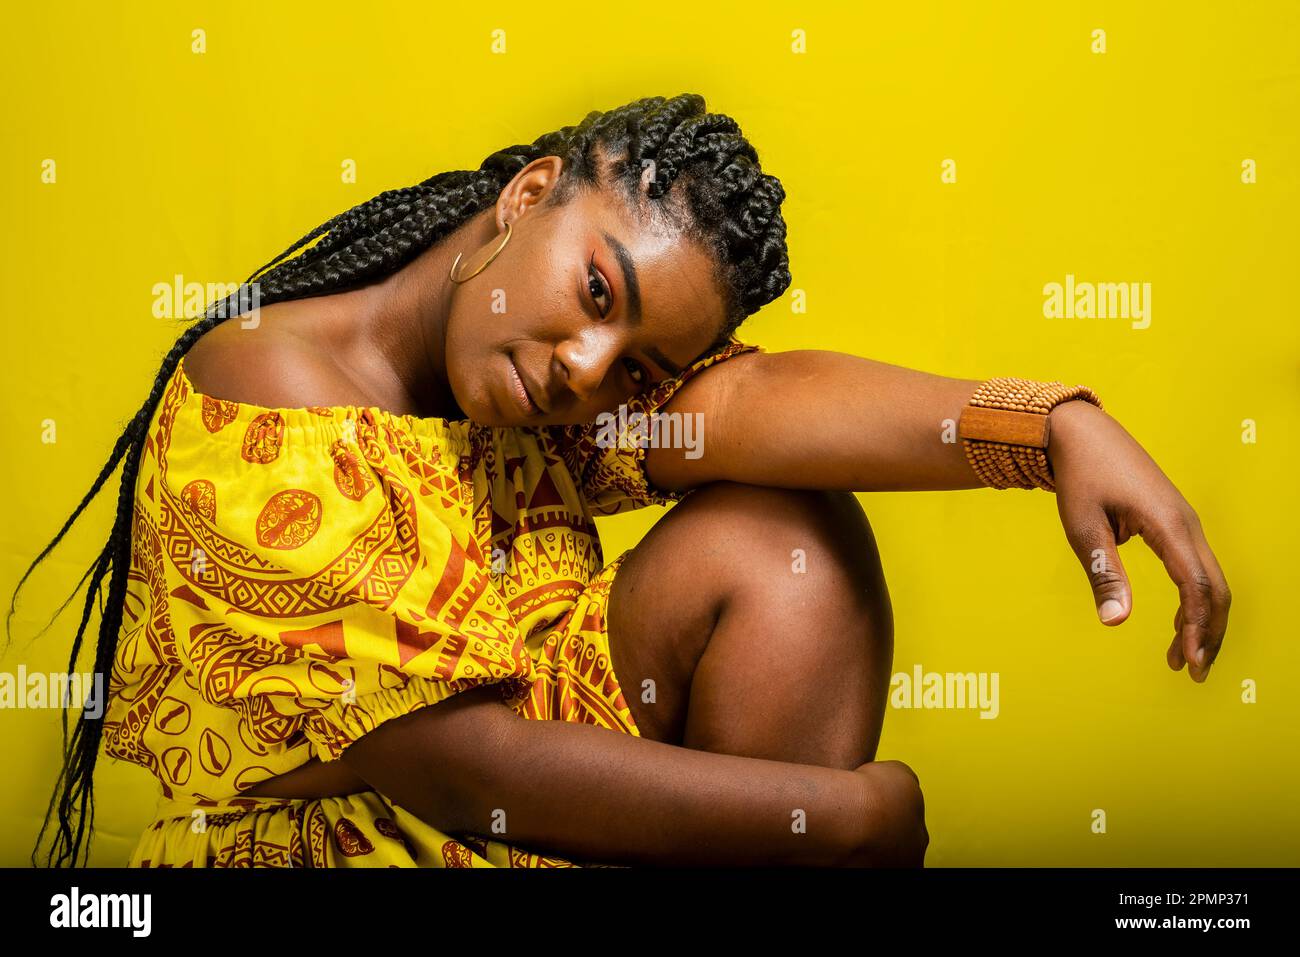 Ritratto di una bella donna, seduta, con la testa abbassata sul braccio. Isolato su sfondo giallo. Foto Stock